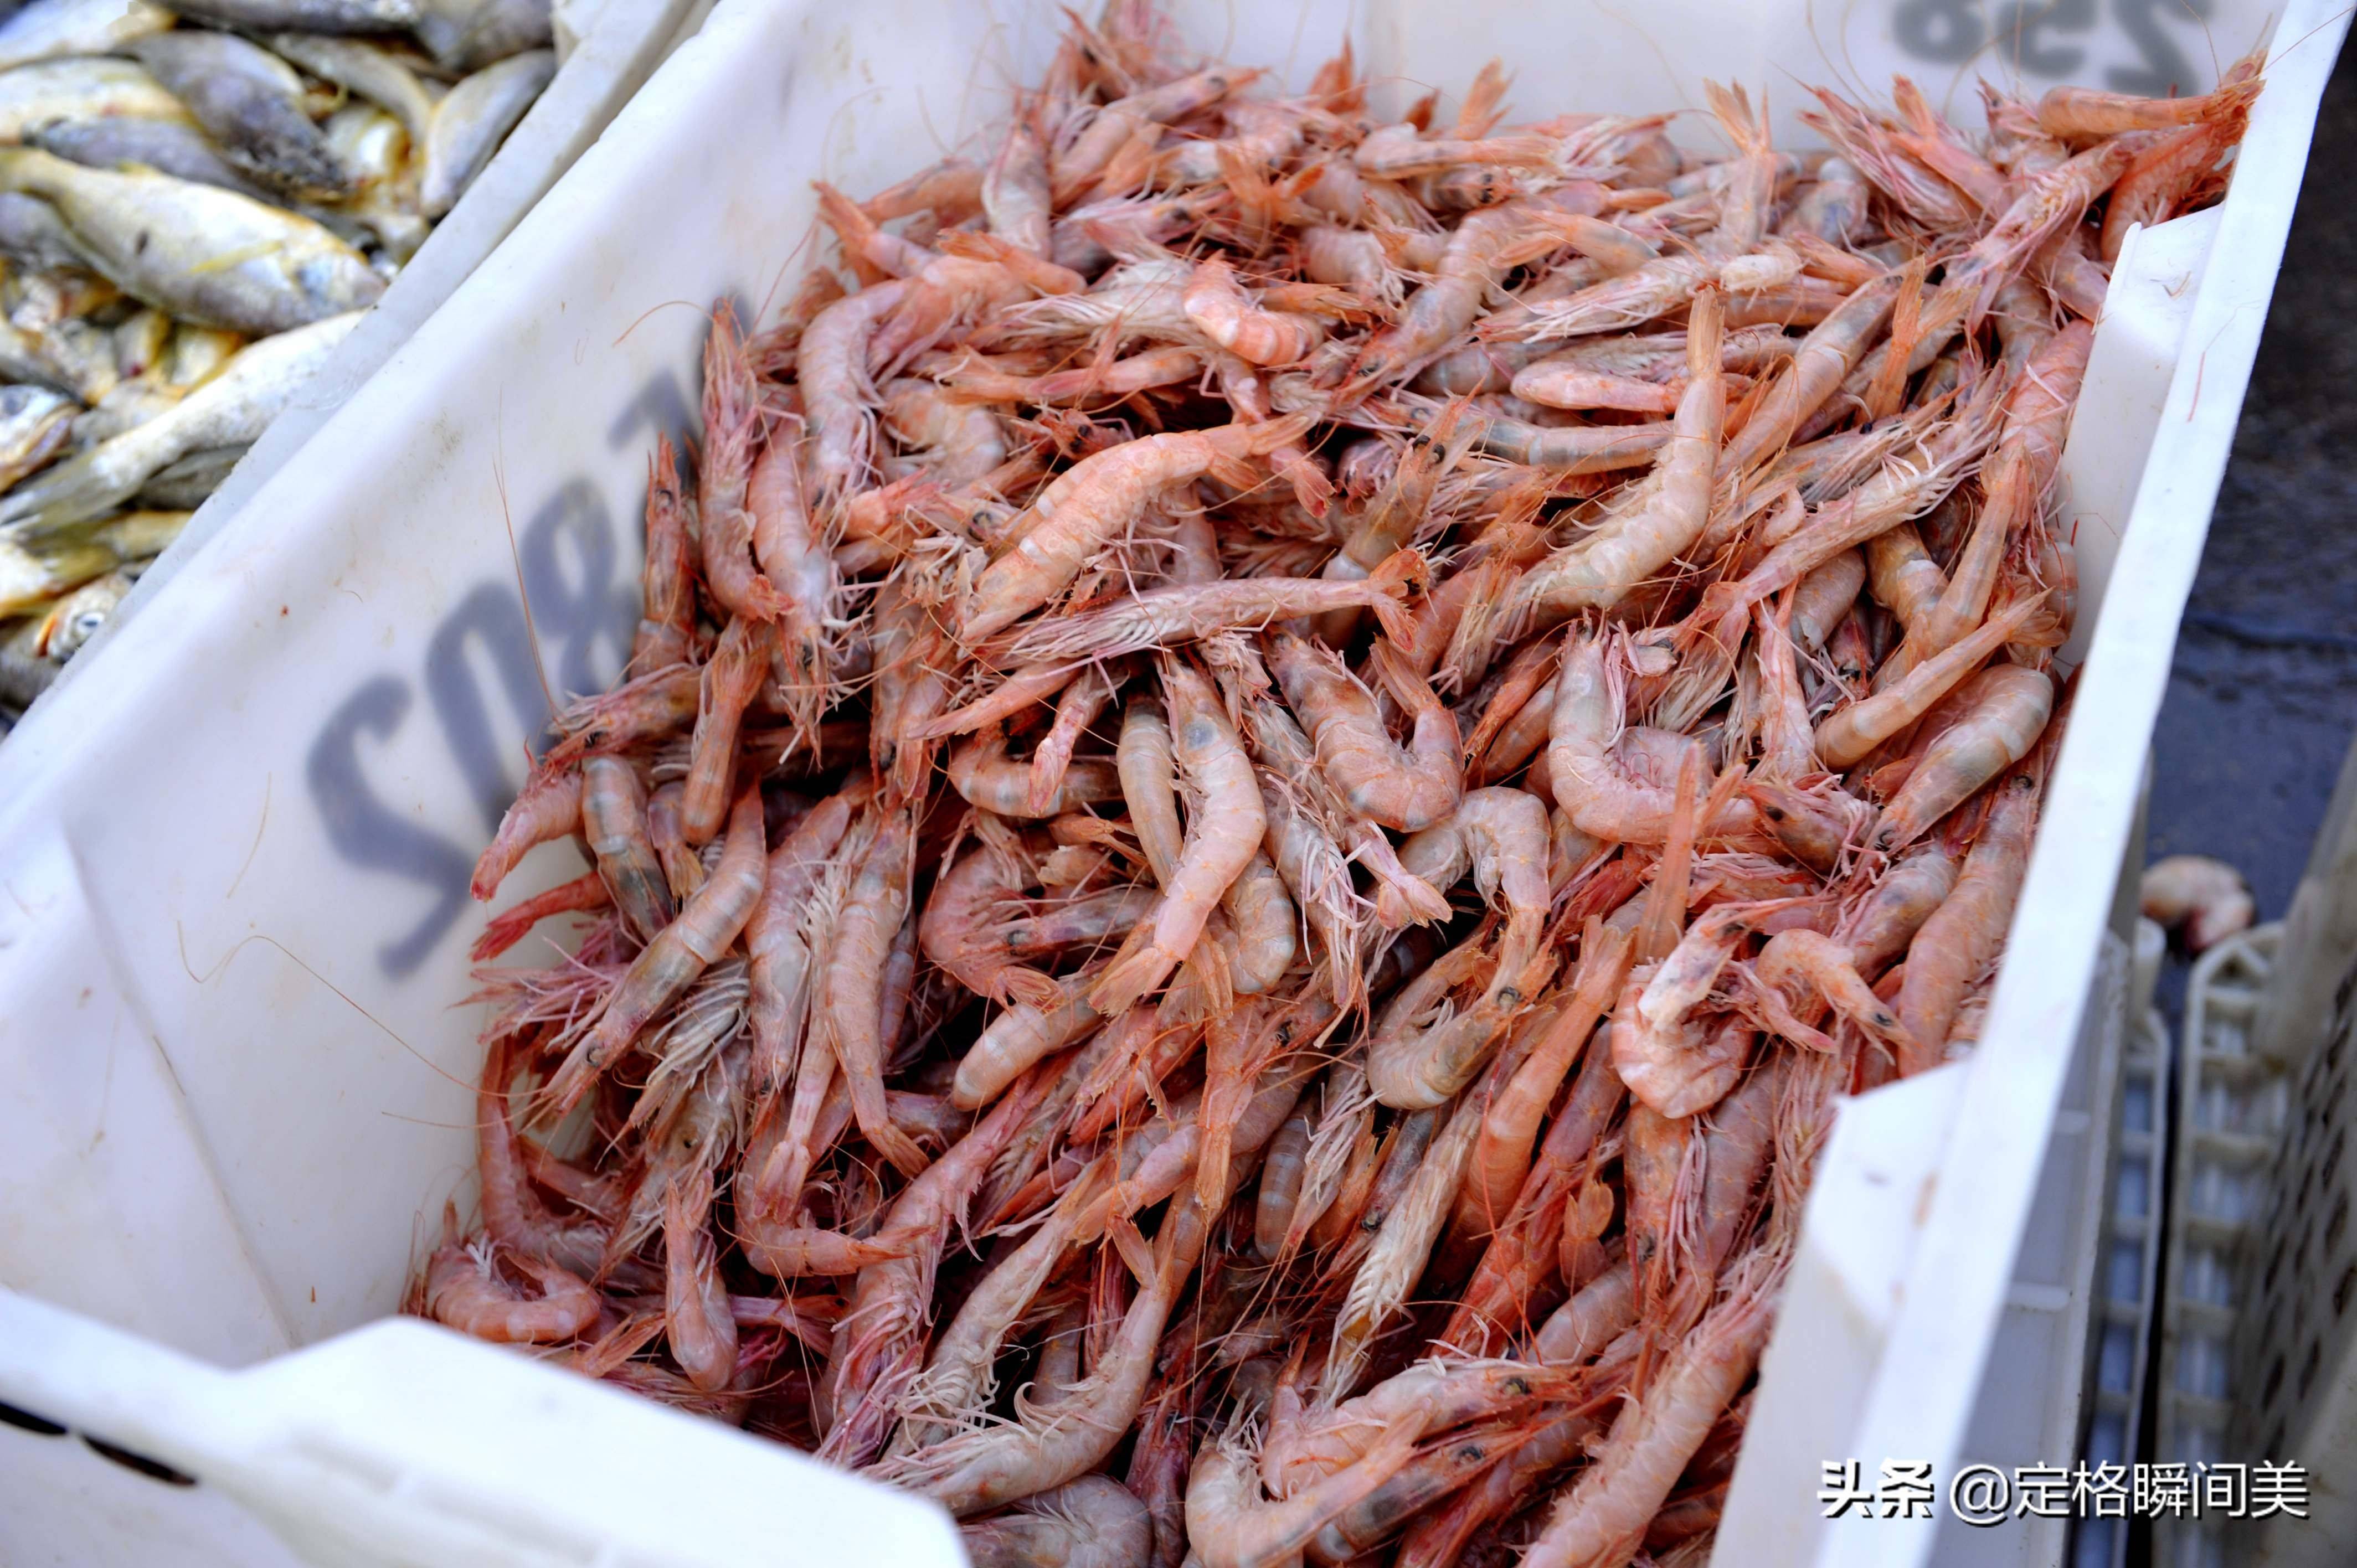 作为一名外乡人,青岛街头的大虾种类繁多,野生vs养殖很多人都不认识